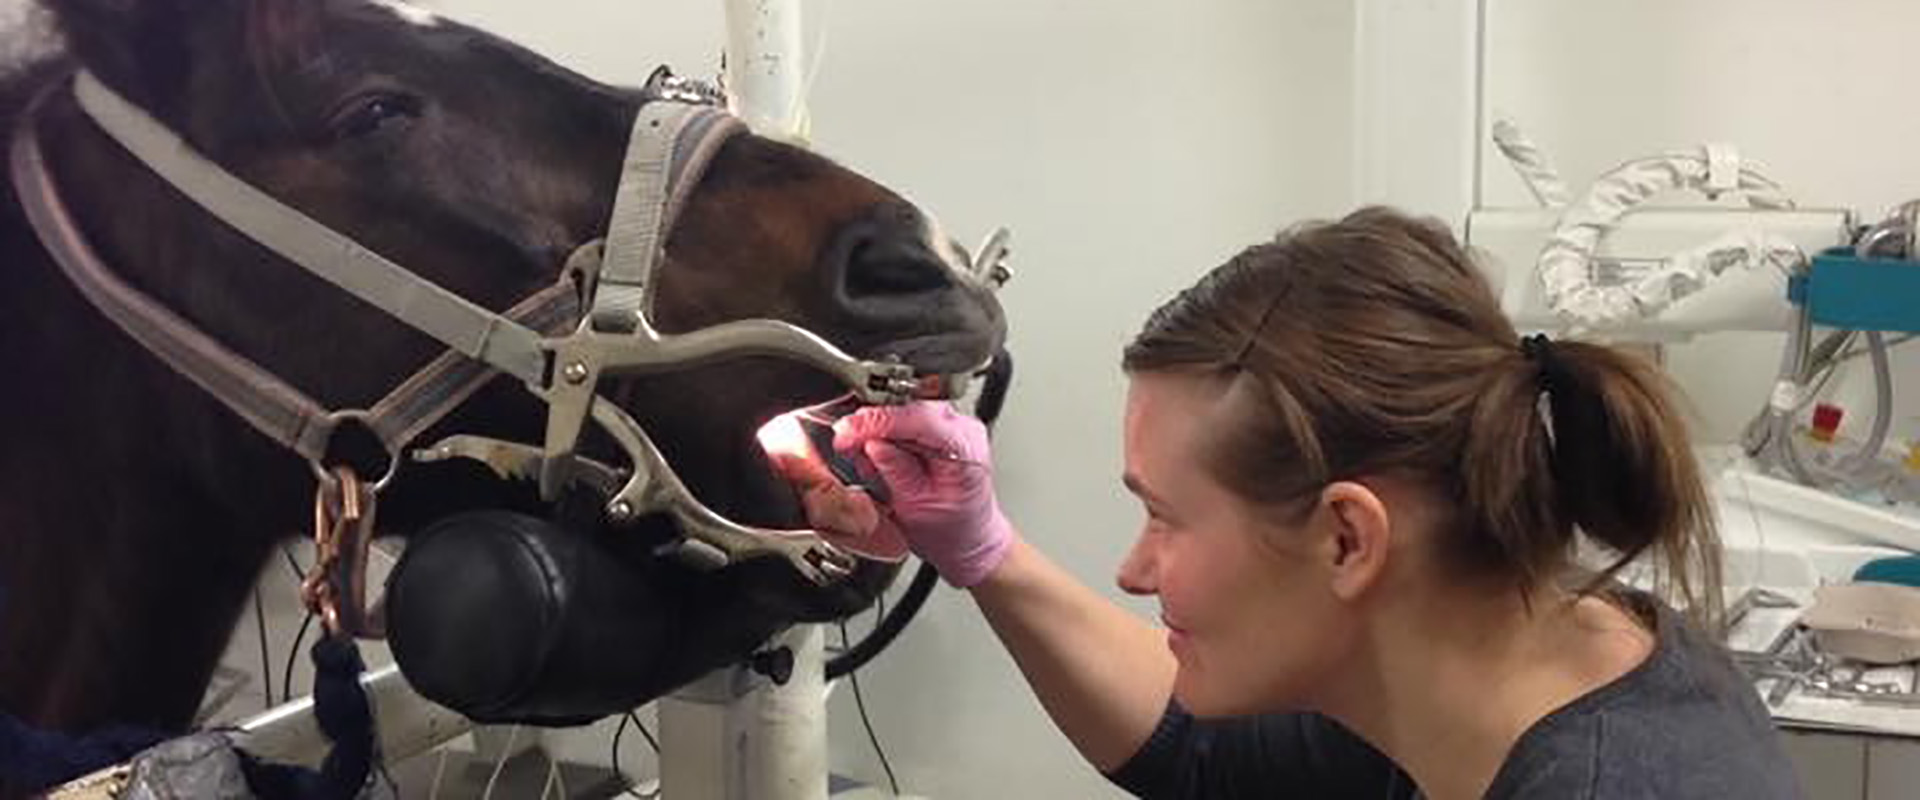 Hevosten hammashoito - Eläinlääkäri Jessica von Wendt